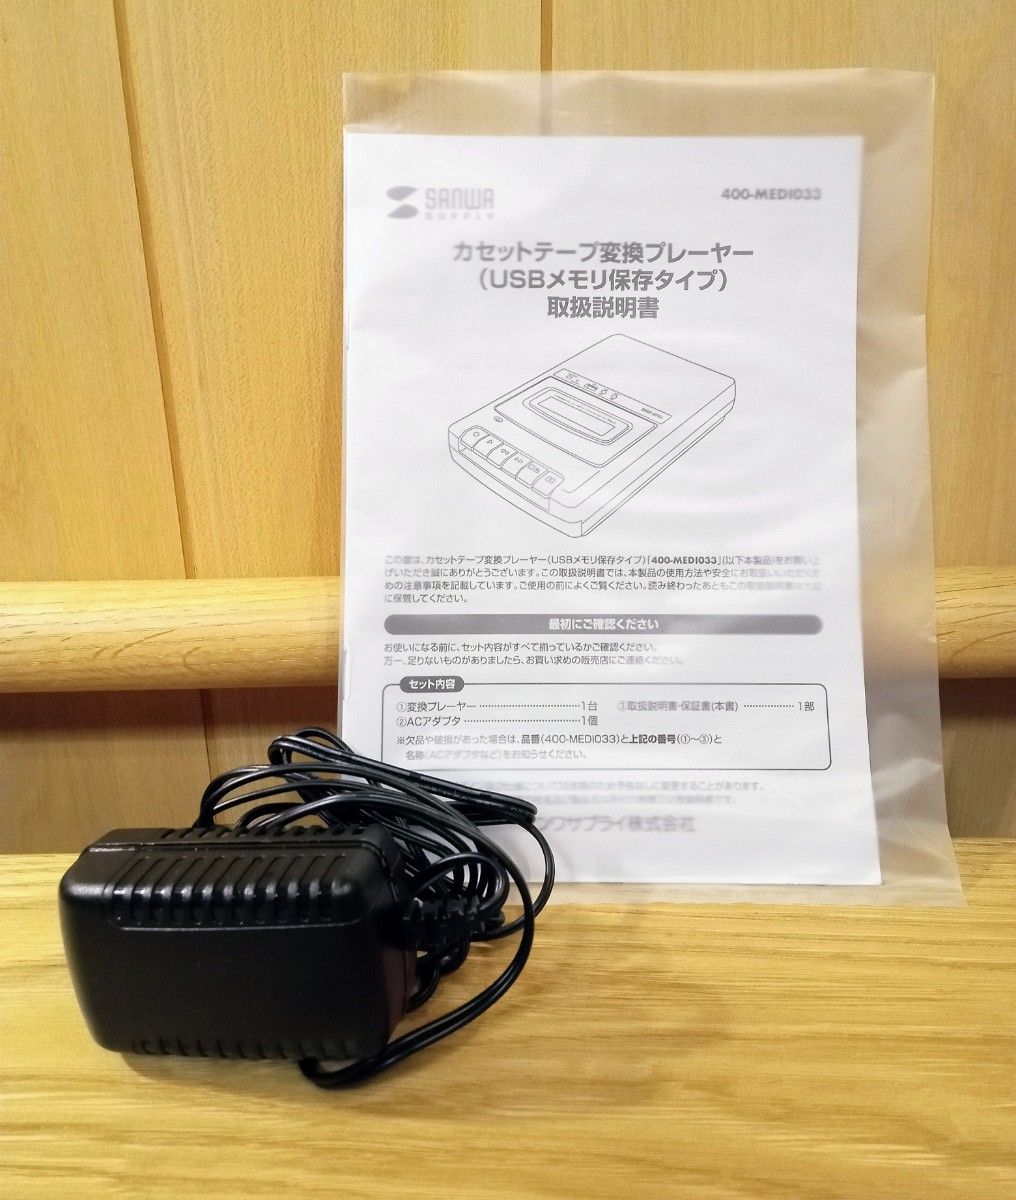 カセットテープ変換プレーヤー（MP3・USB保存) 400-MEDI033 サンワサプライ